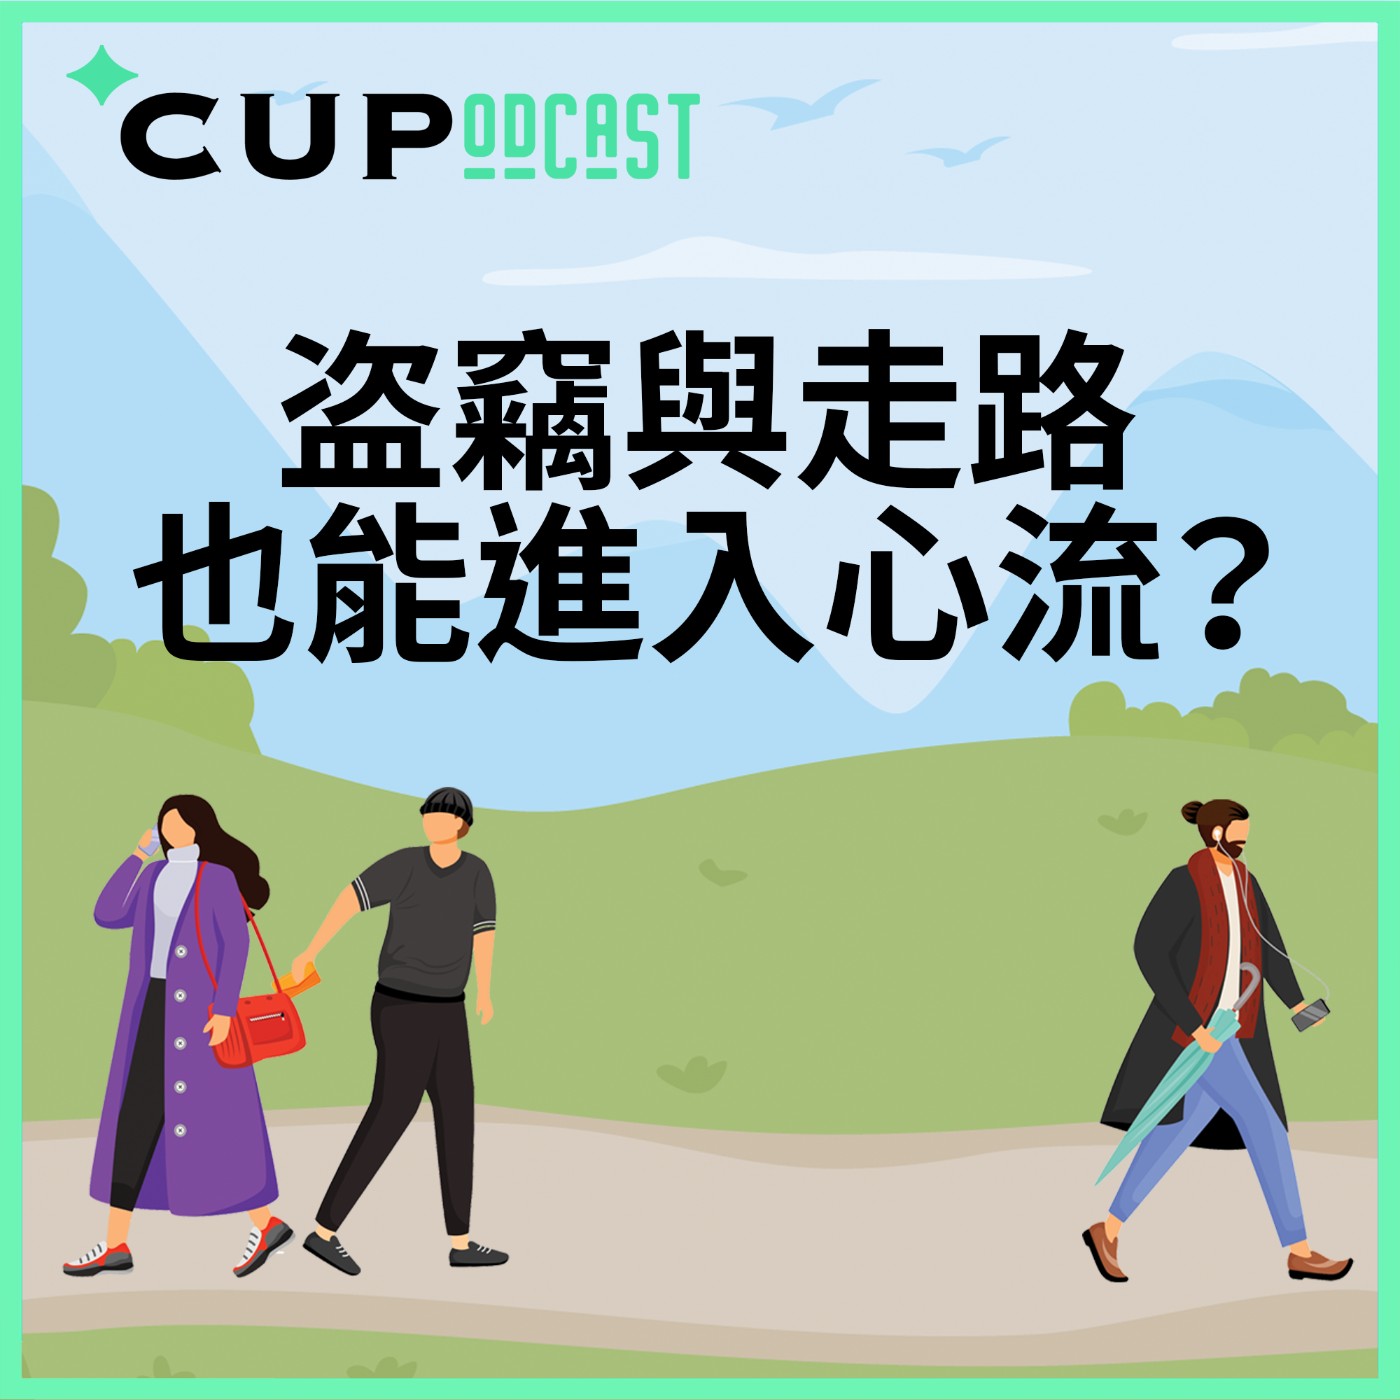 【*CUPodcast】#71 盗竊與走路也能進入心流？